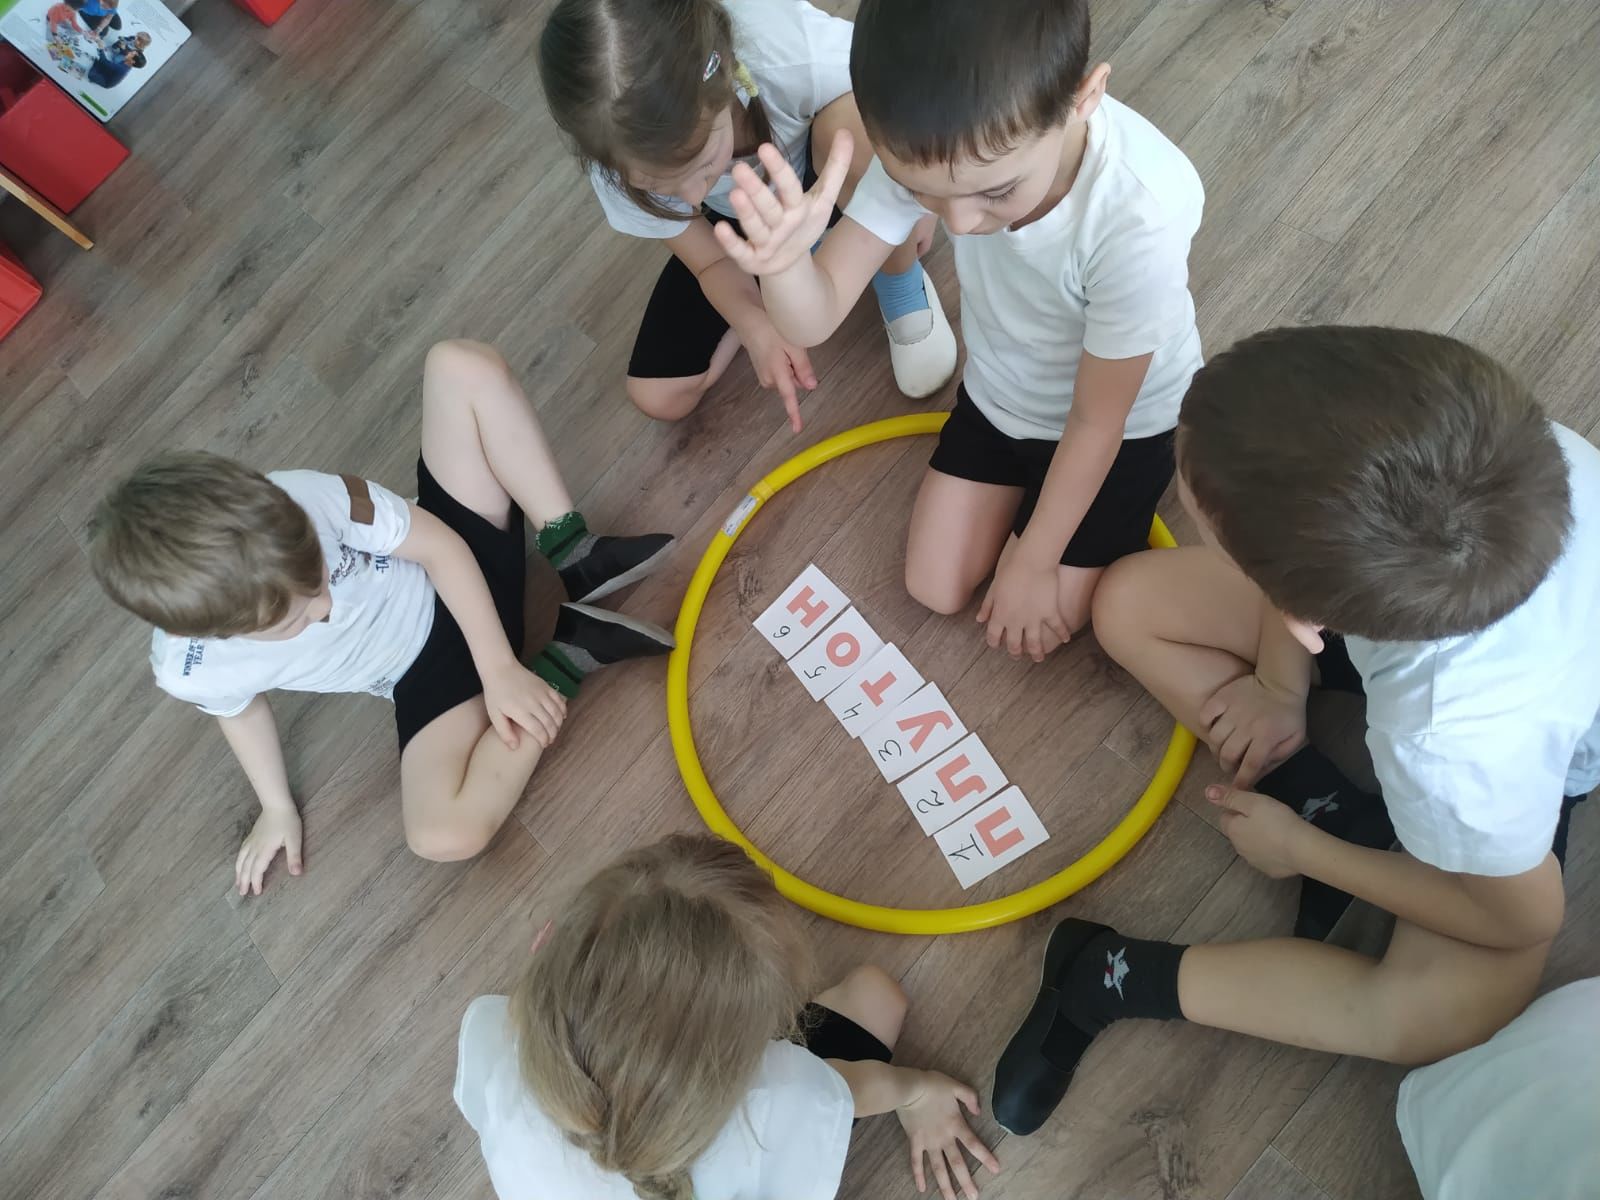 В детском саду "Теремок" отпраздновали День космонавтики